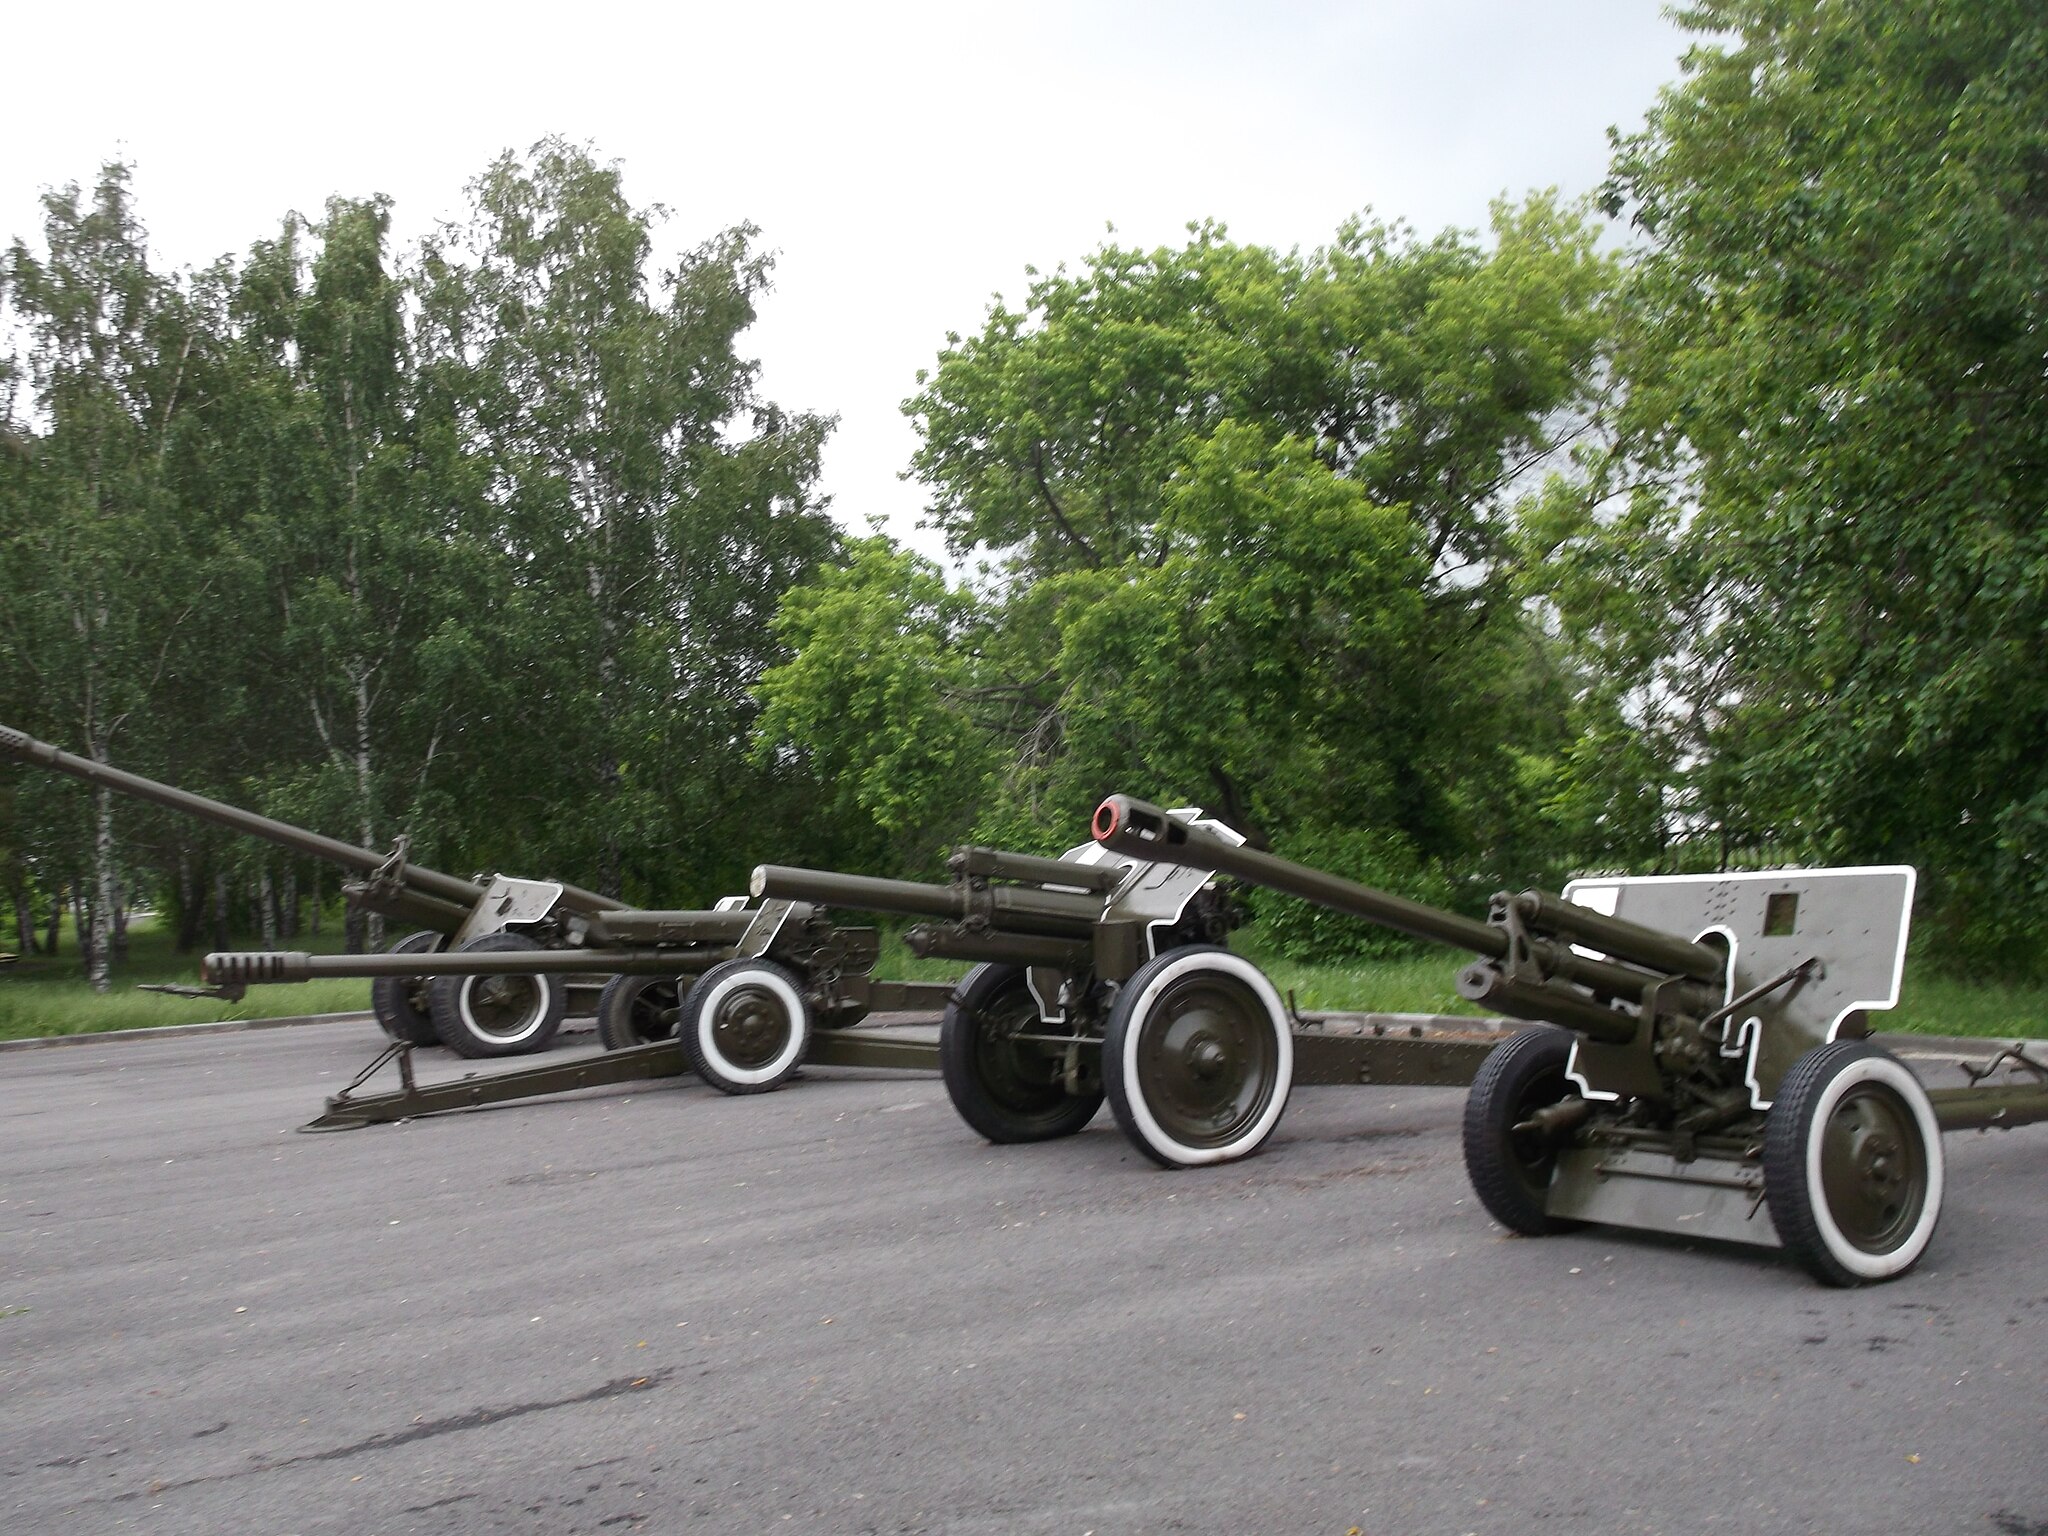 Выставка орудий в городском саду. Год основания: 2014. Место расположения: Аллея Героев.